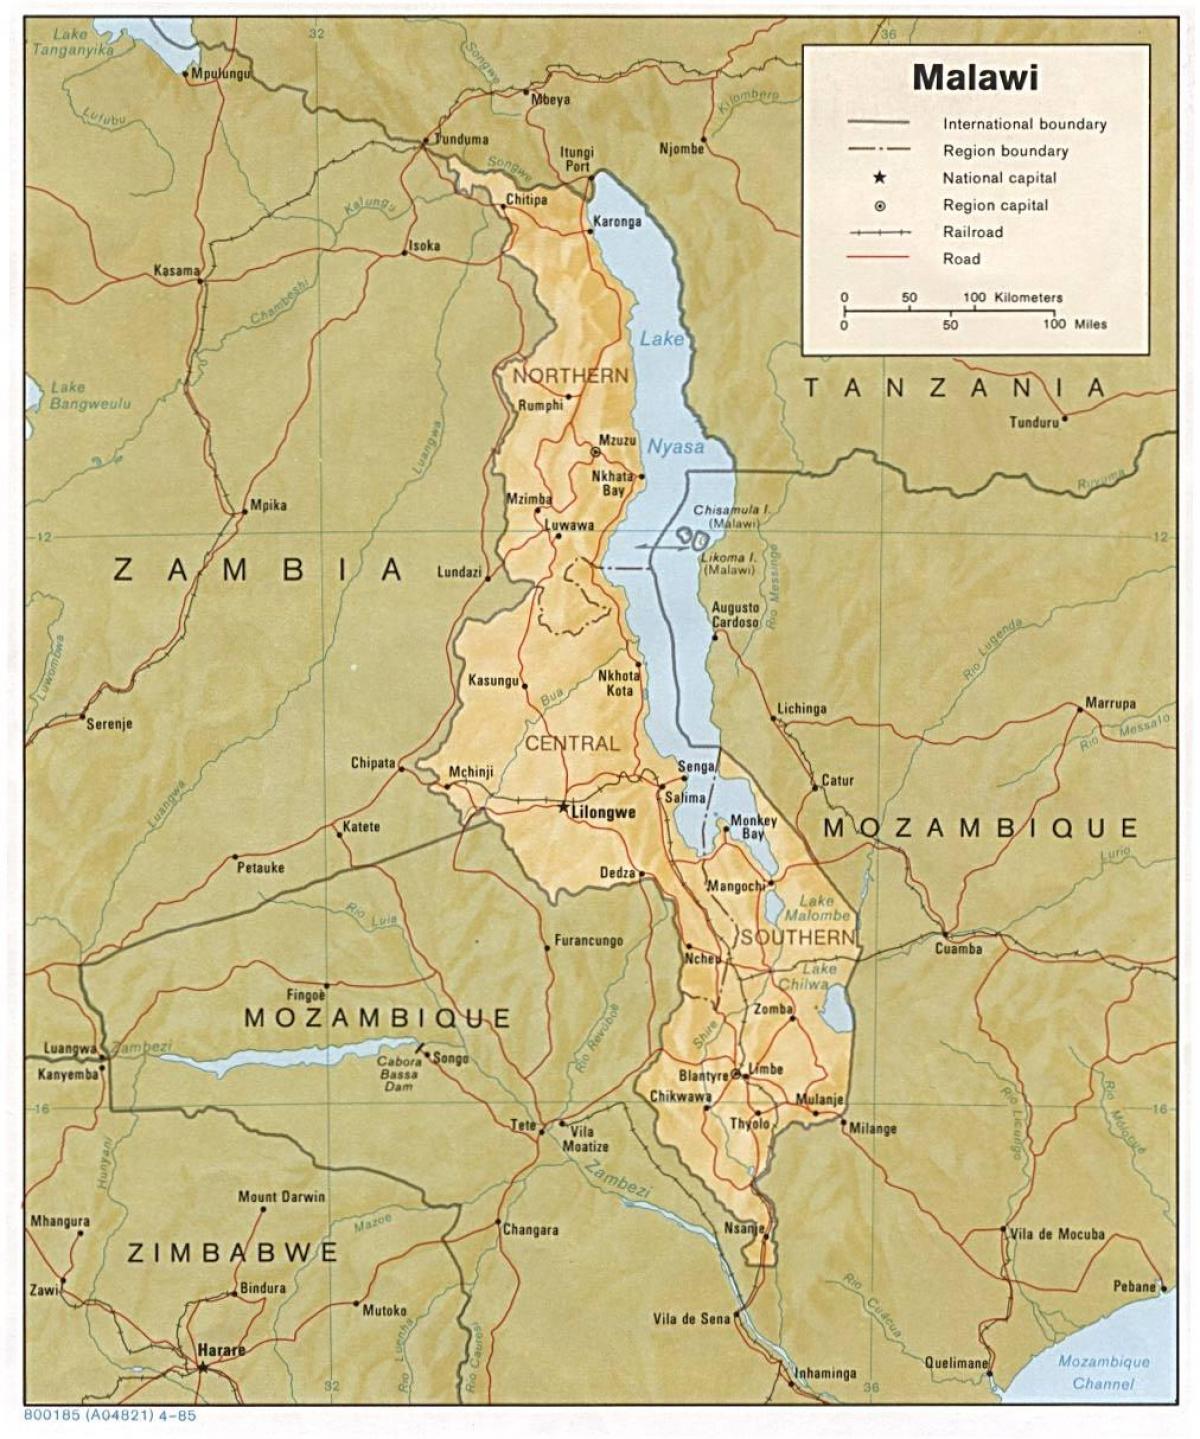 le lac Malawi sur la carte